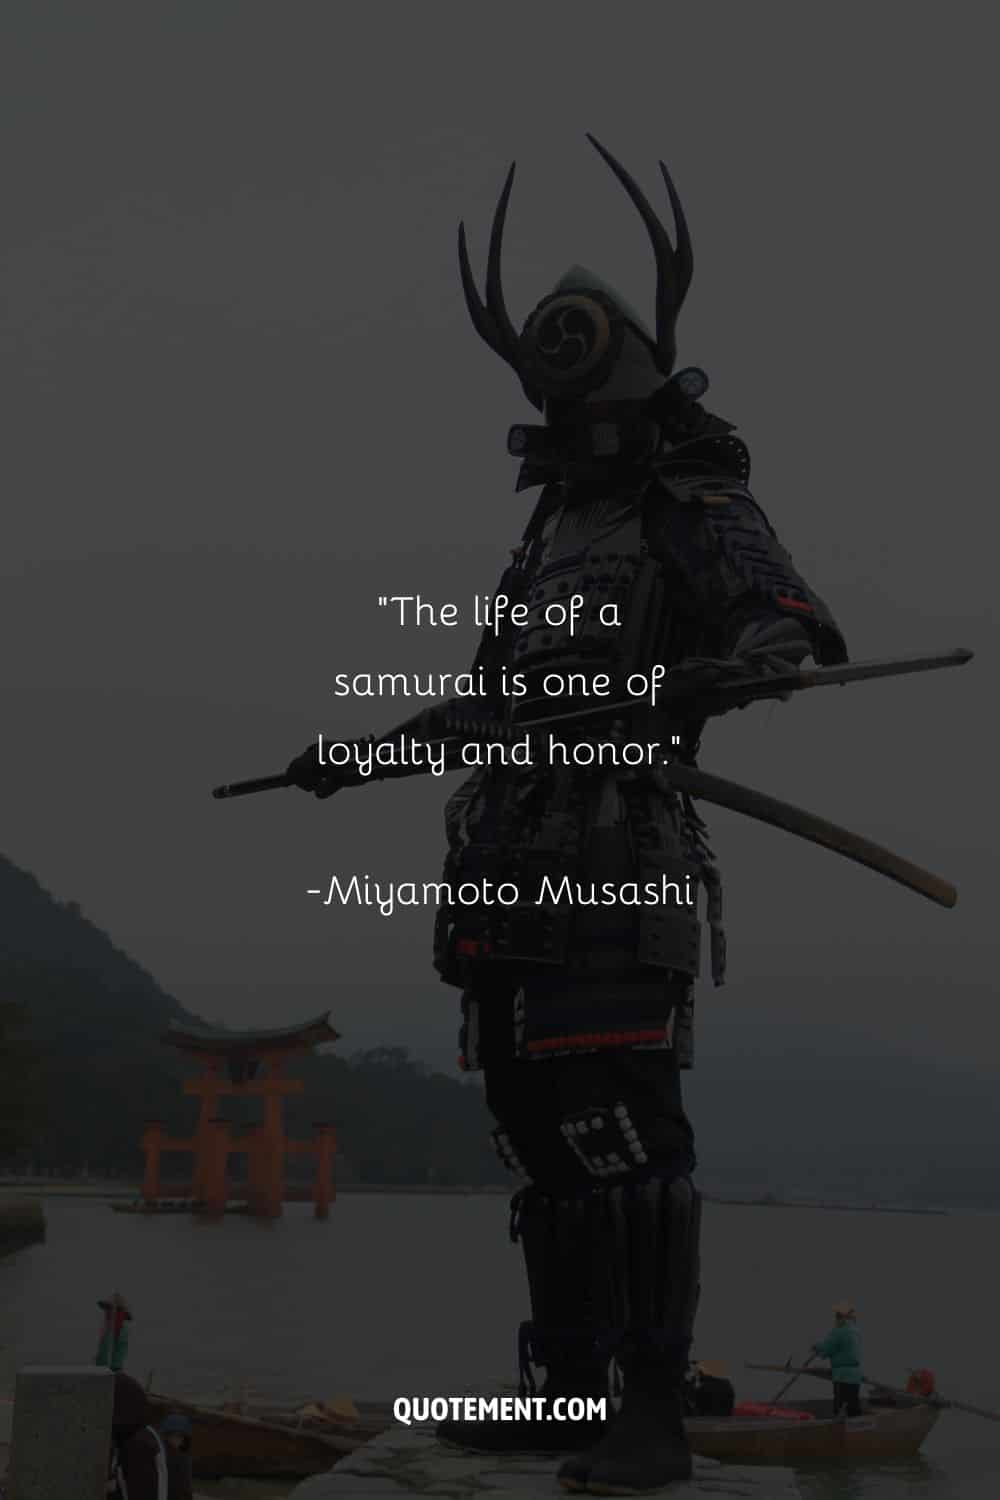 Intimidating samurai in fearsome black armor representing famous samurai quote